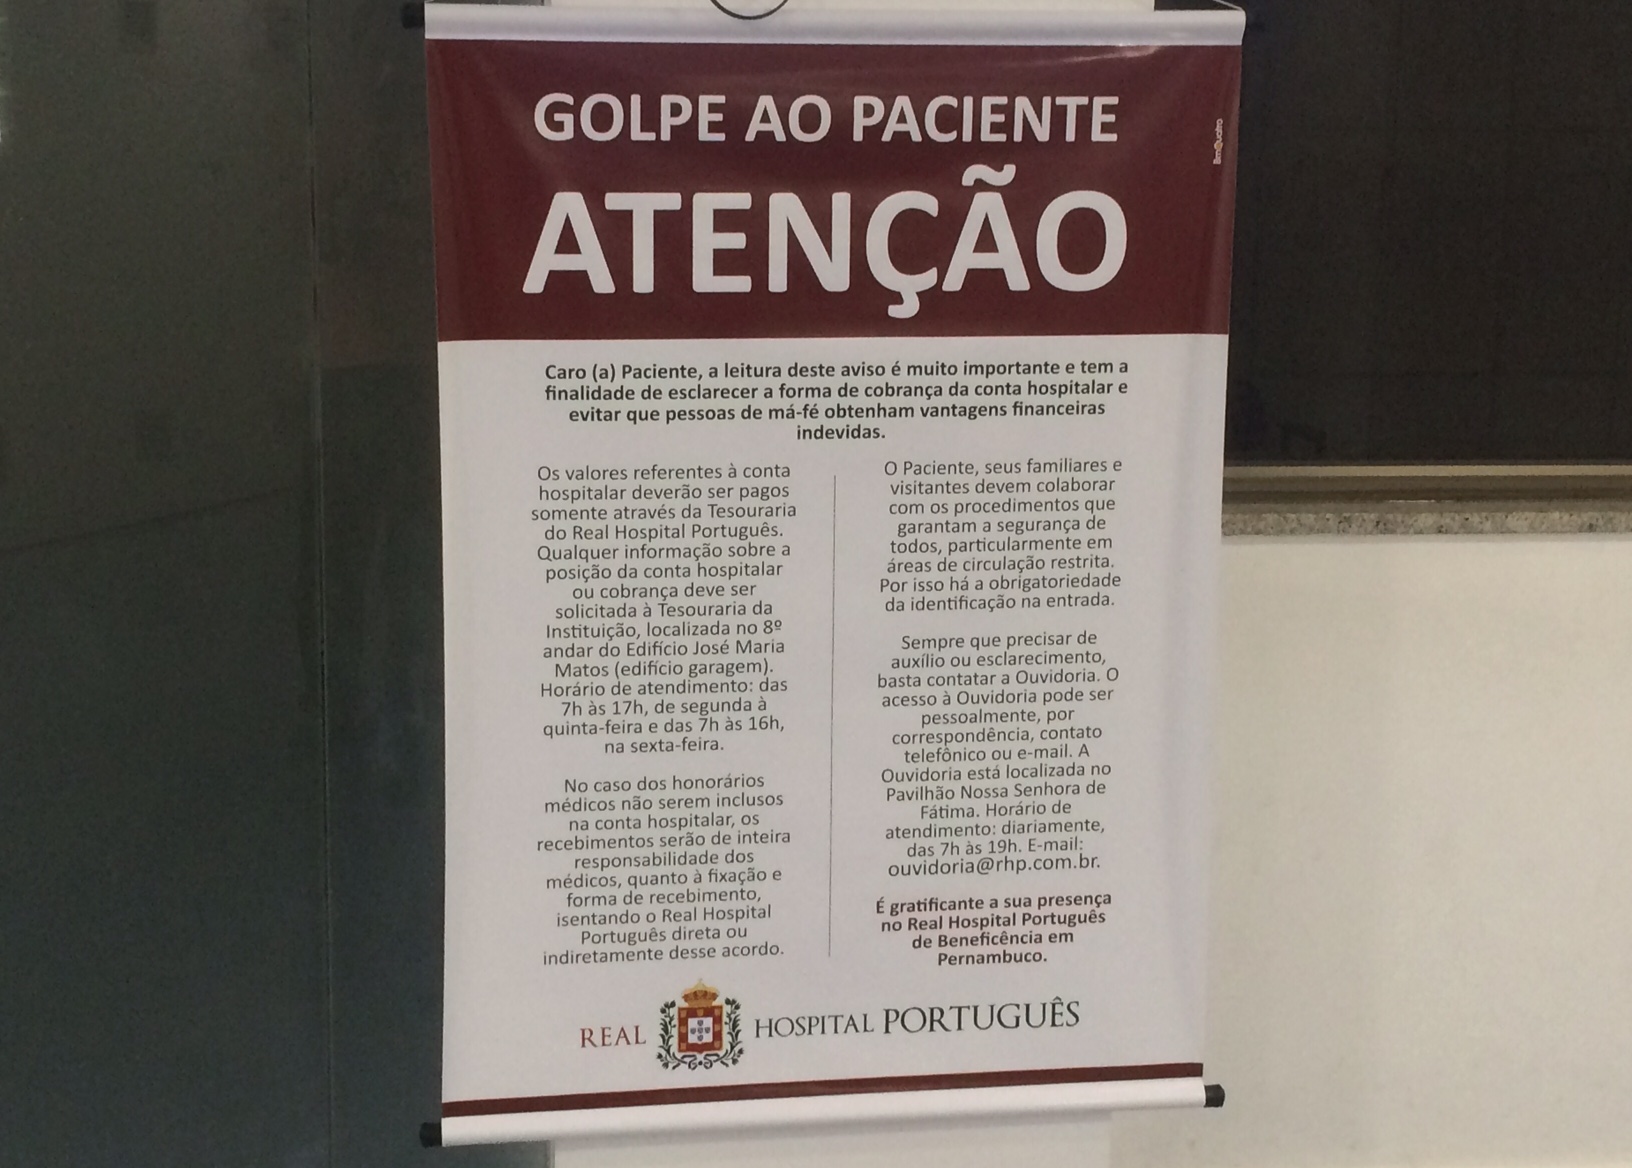 Avisos estão espalhados em vários pontos do Hospital Português. Foto: Wagner Oliveira/DP